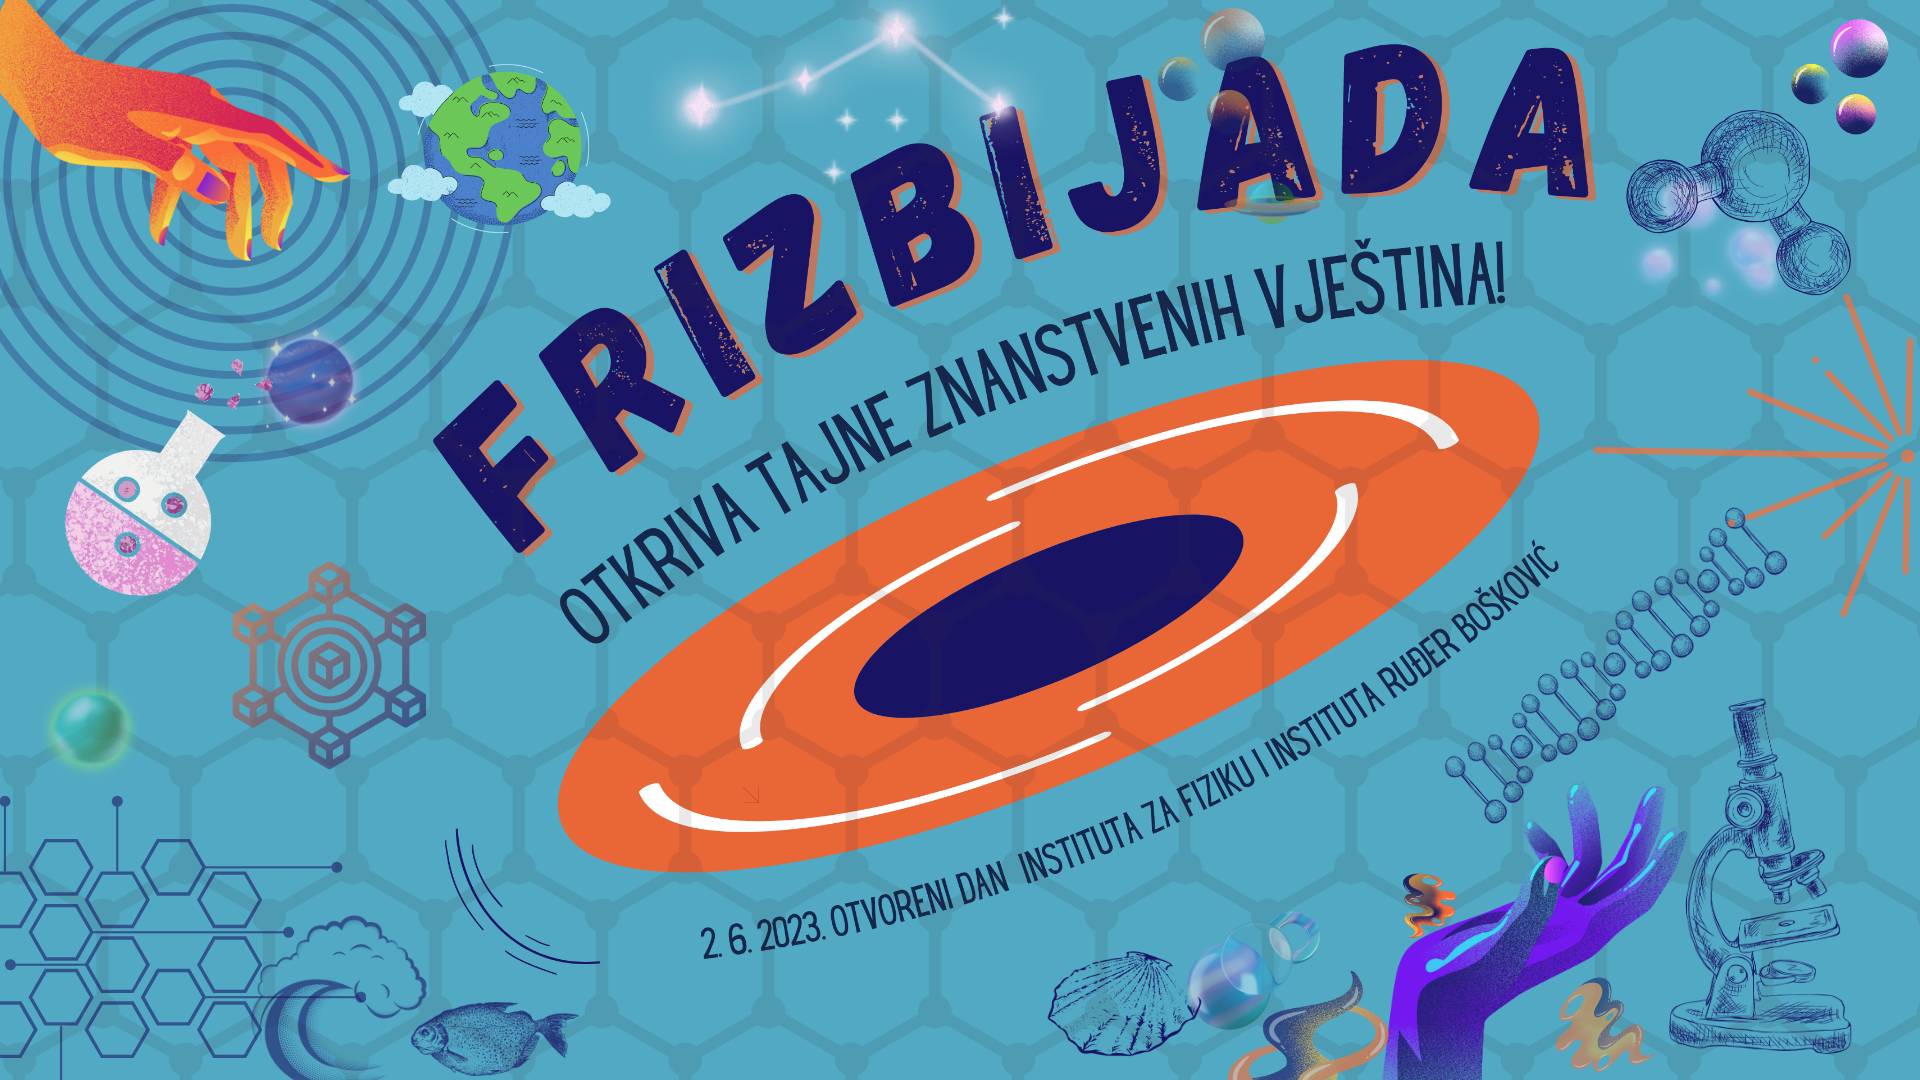 "Ruđer" i Institut za fiziku lansiraju Frizbijadu!